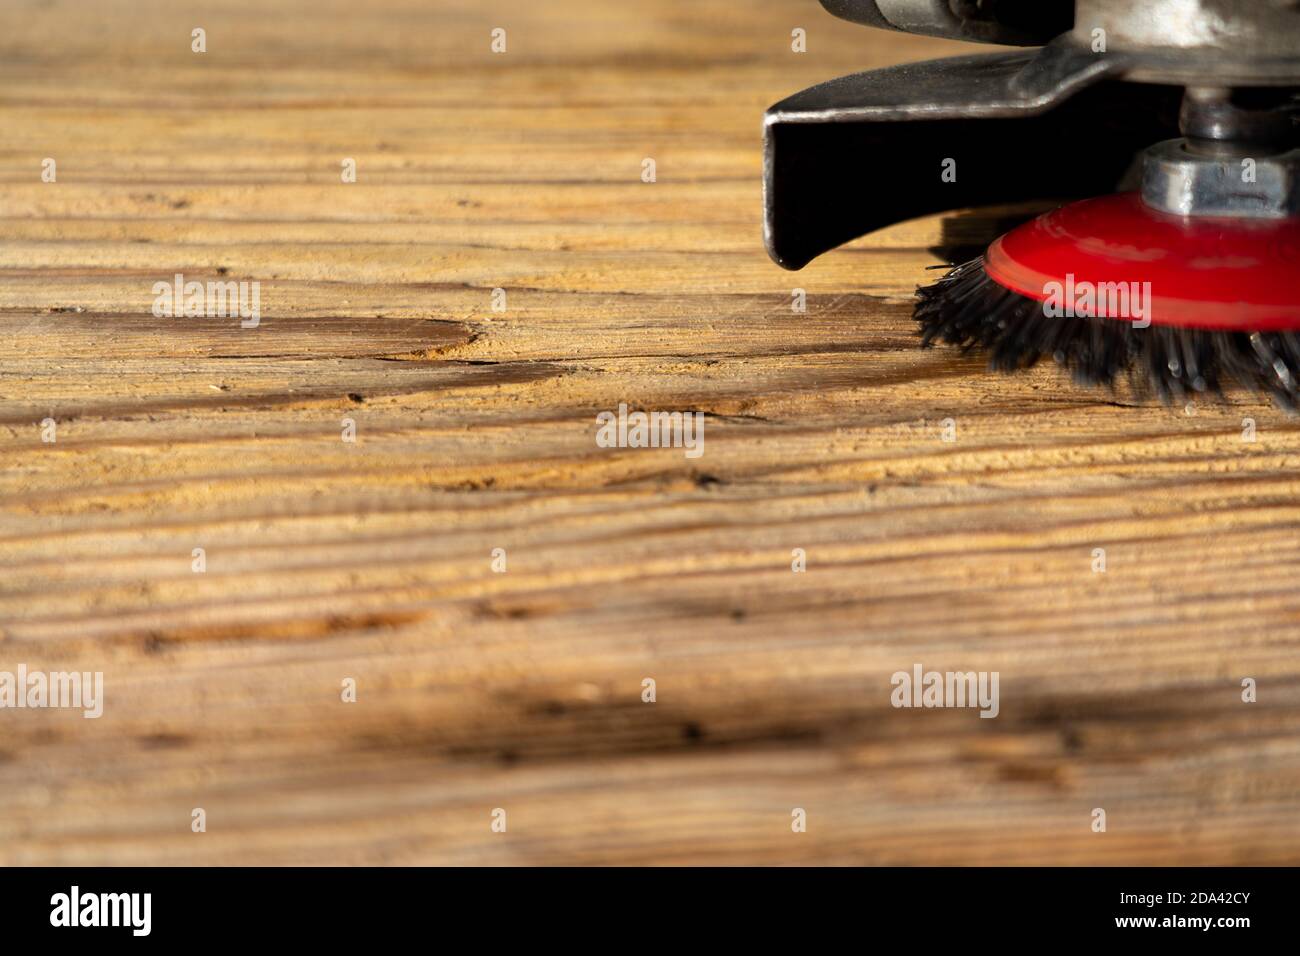 Elektrische rotierende Bürste Metallscheibe ein Stück Holz Schleifen  Stockfotografie - Alamy